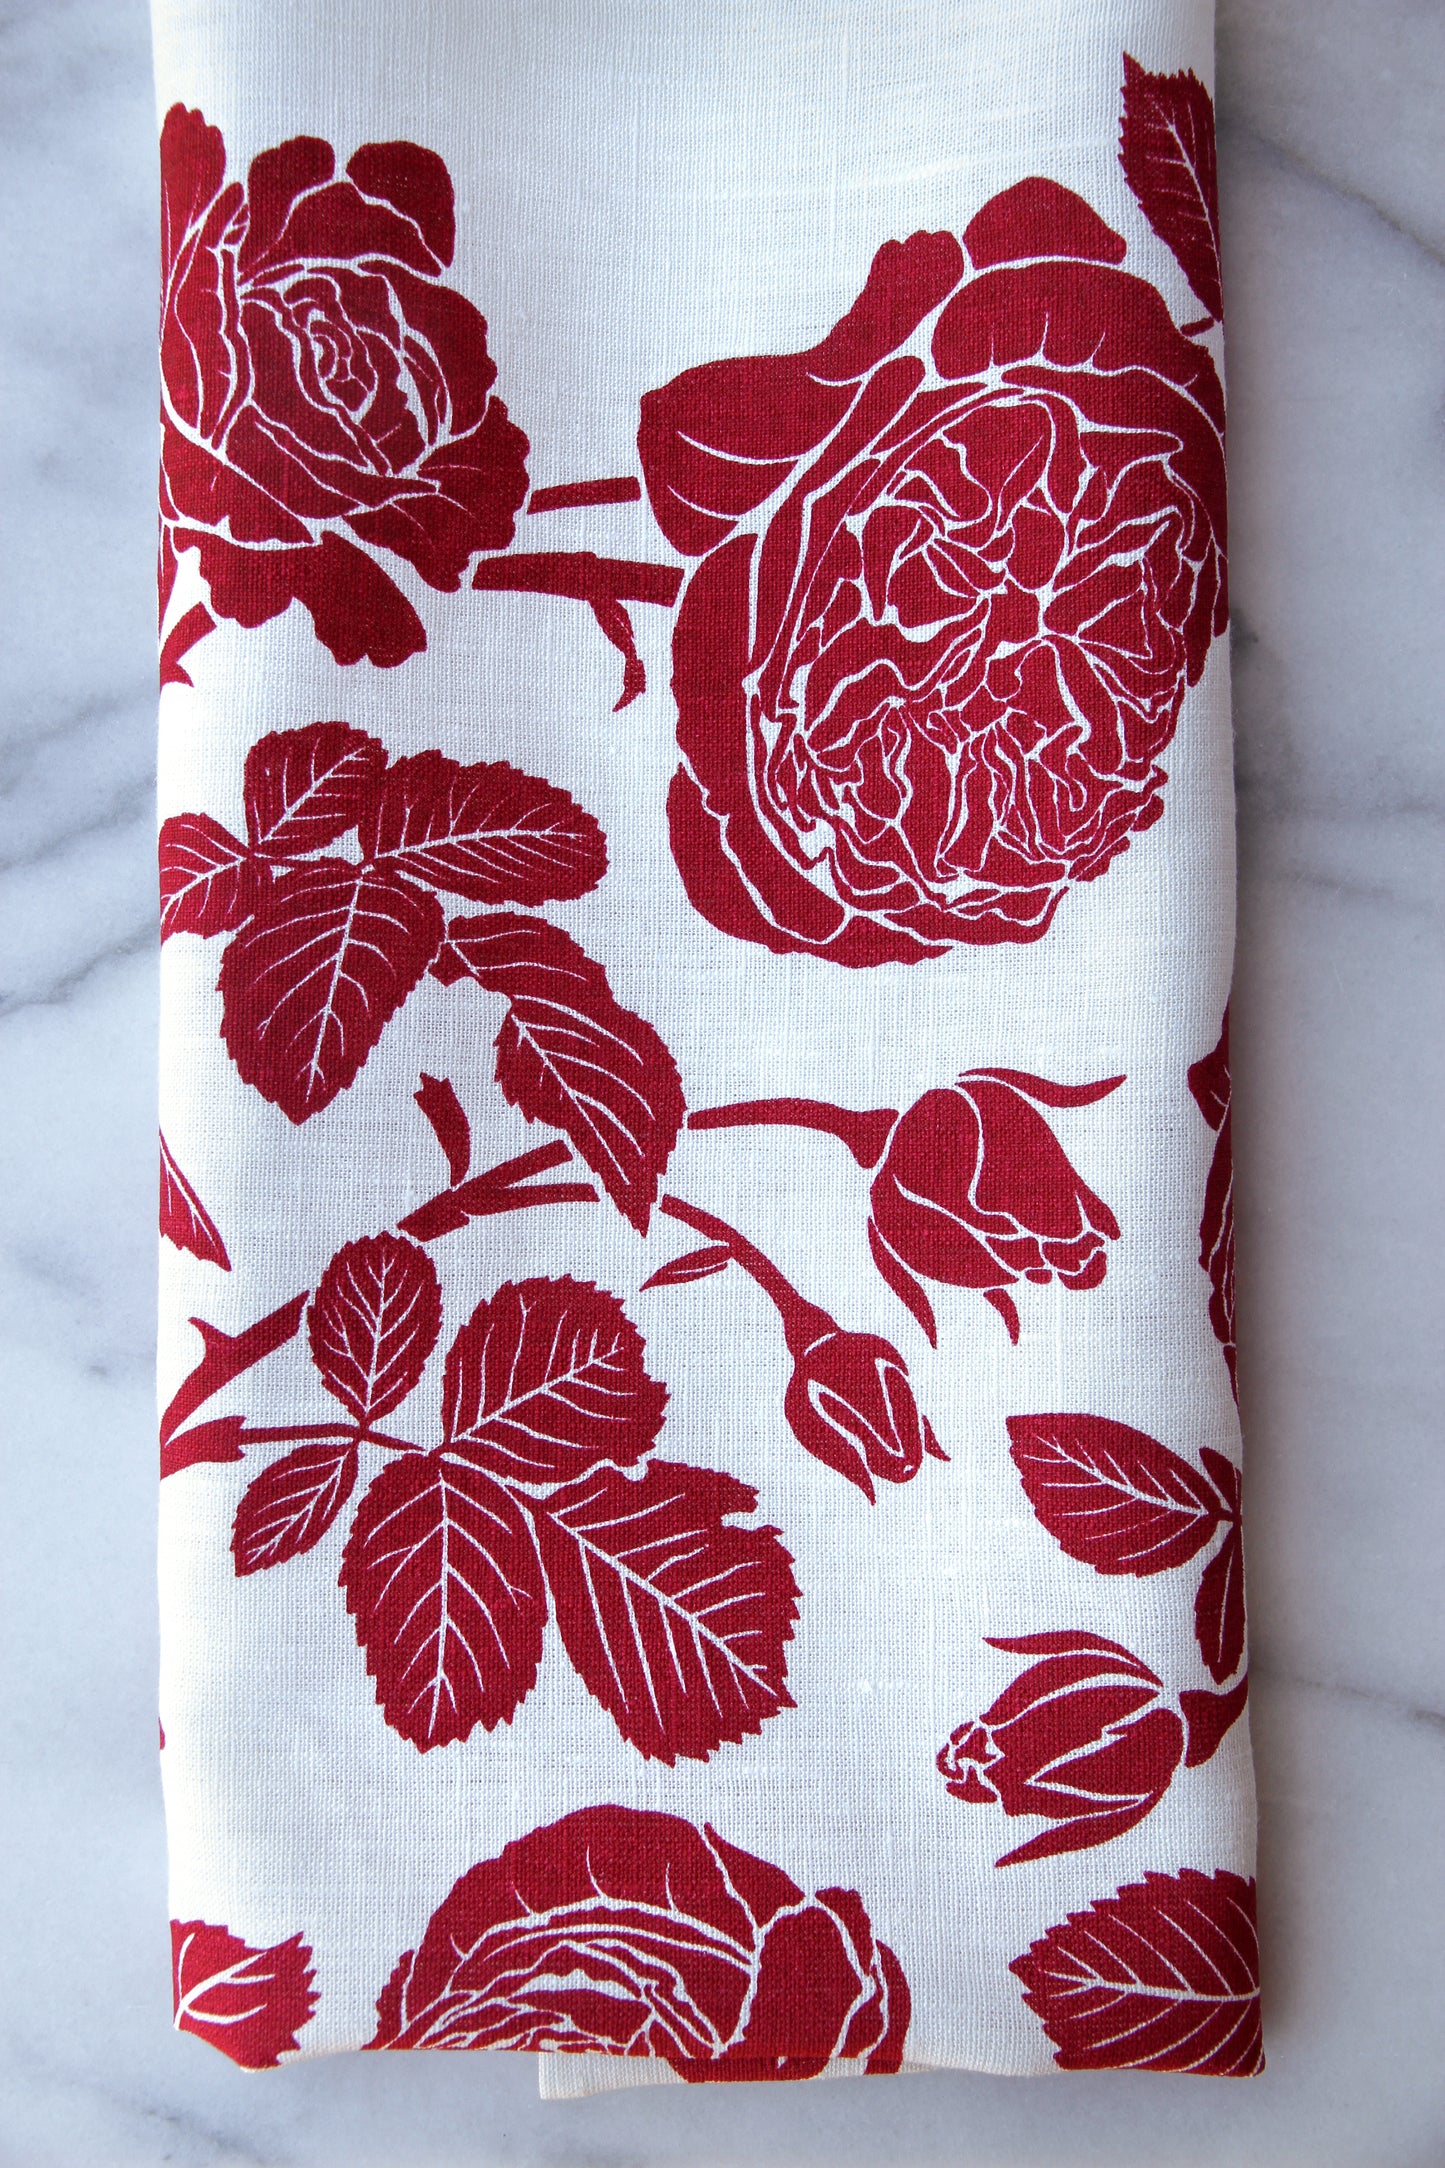 Garden Rose in Ladybug on White Linen